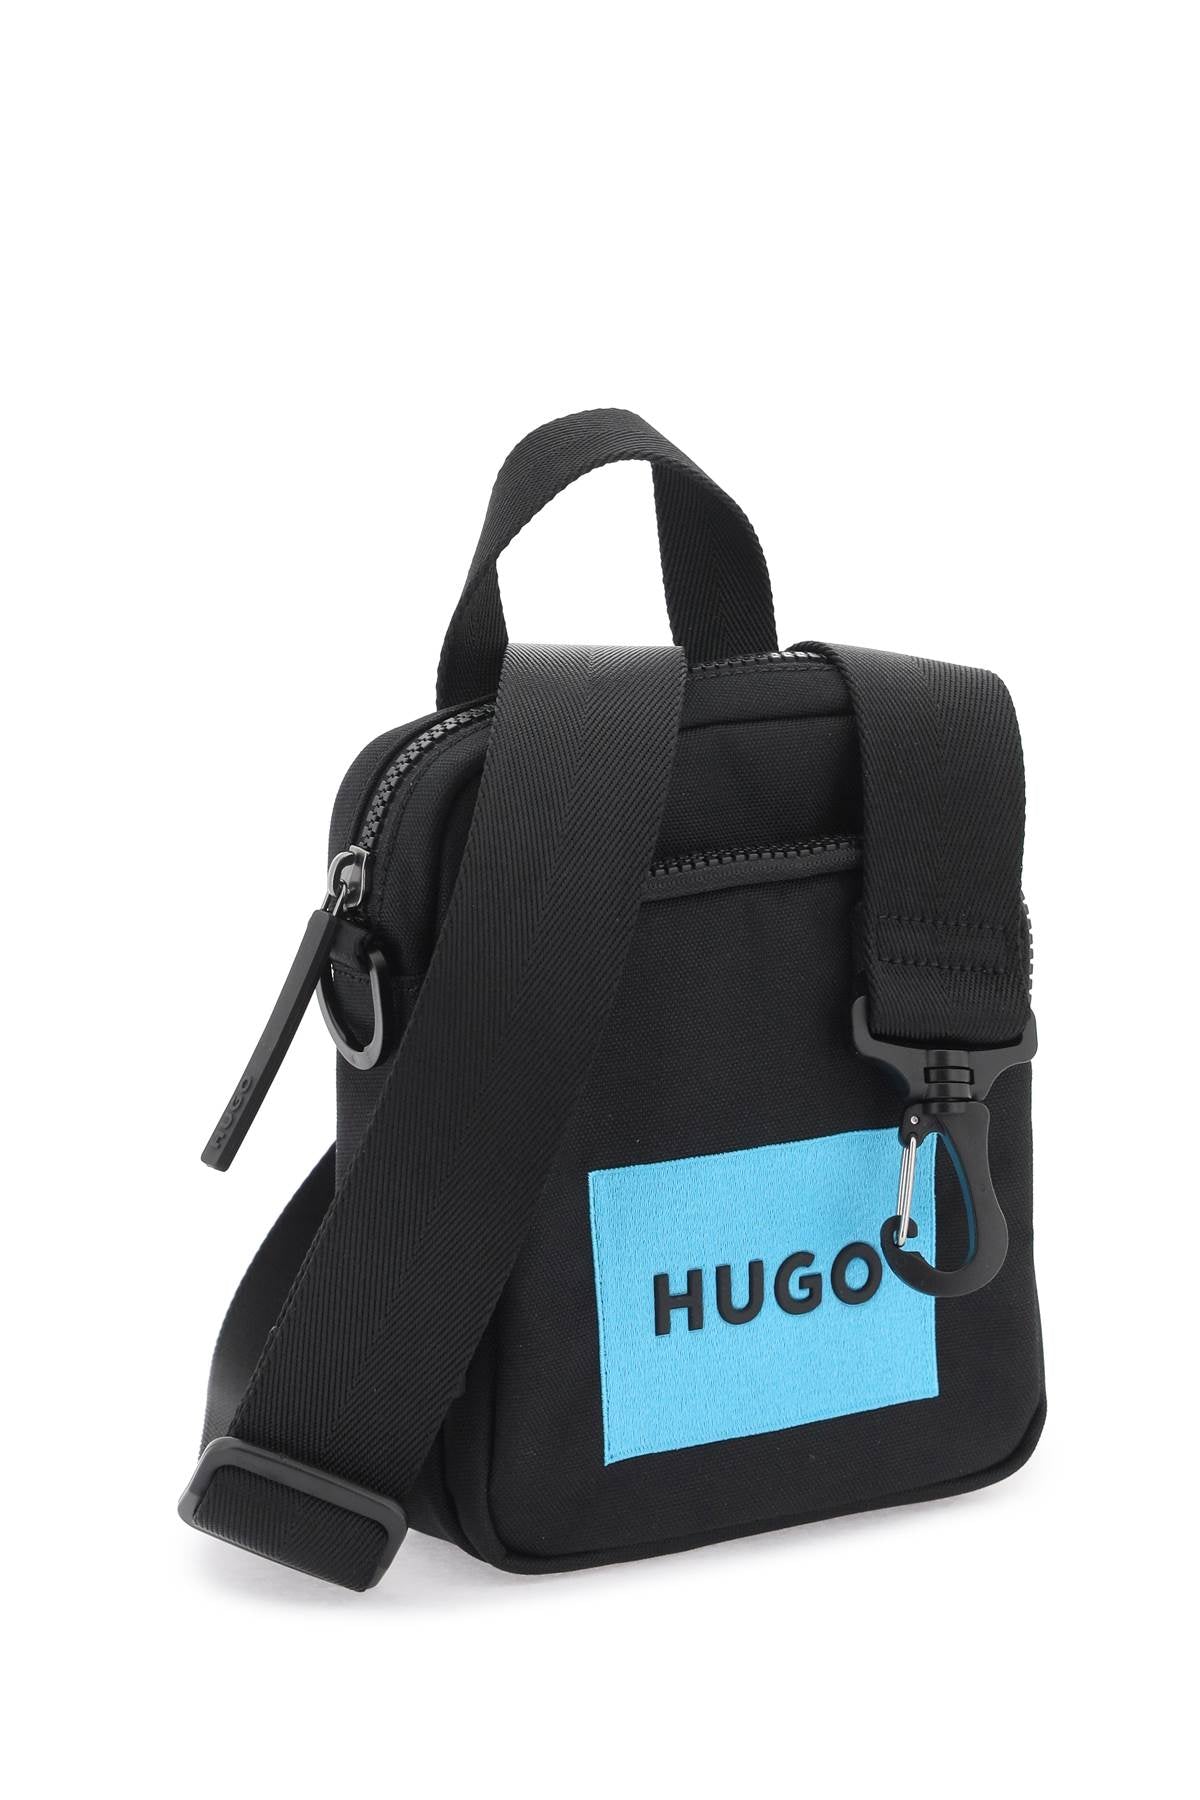 Hugo nylon shoulder bag with adjustable strap-2